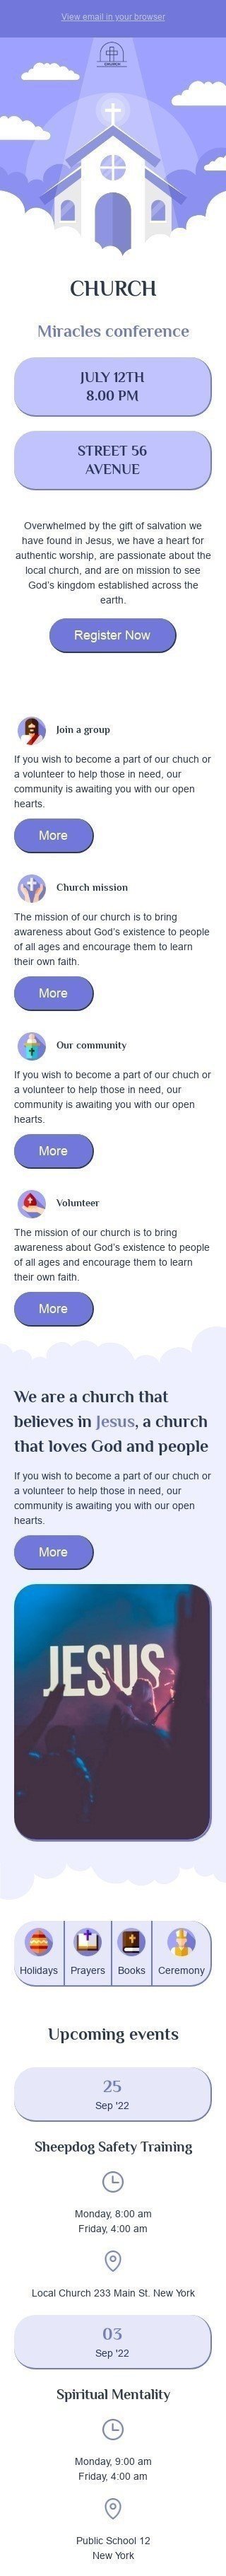 Modelo de E-mail de «Conferência de milagres» de Promoção para a indústria de Igreja Visualização de dispositivo móvel